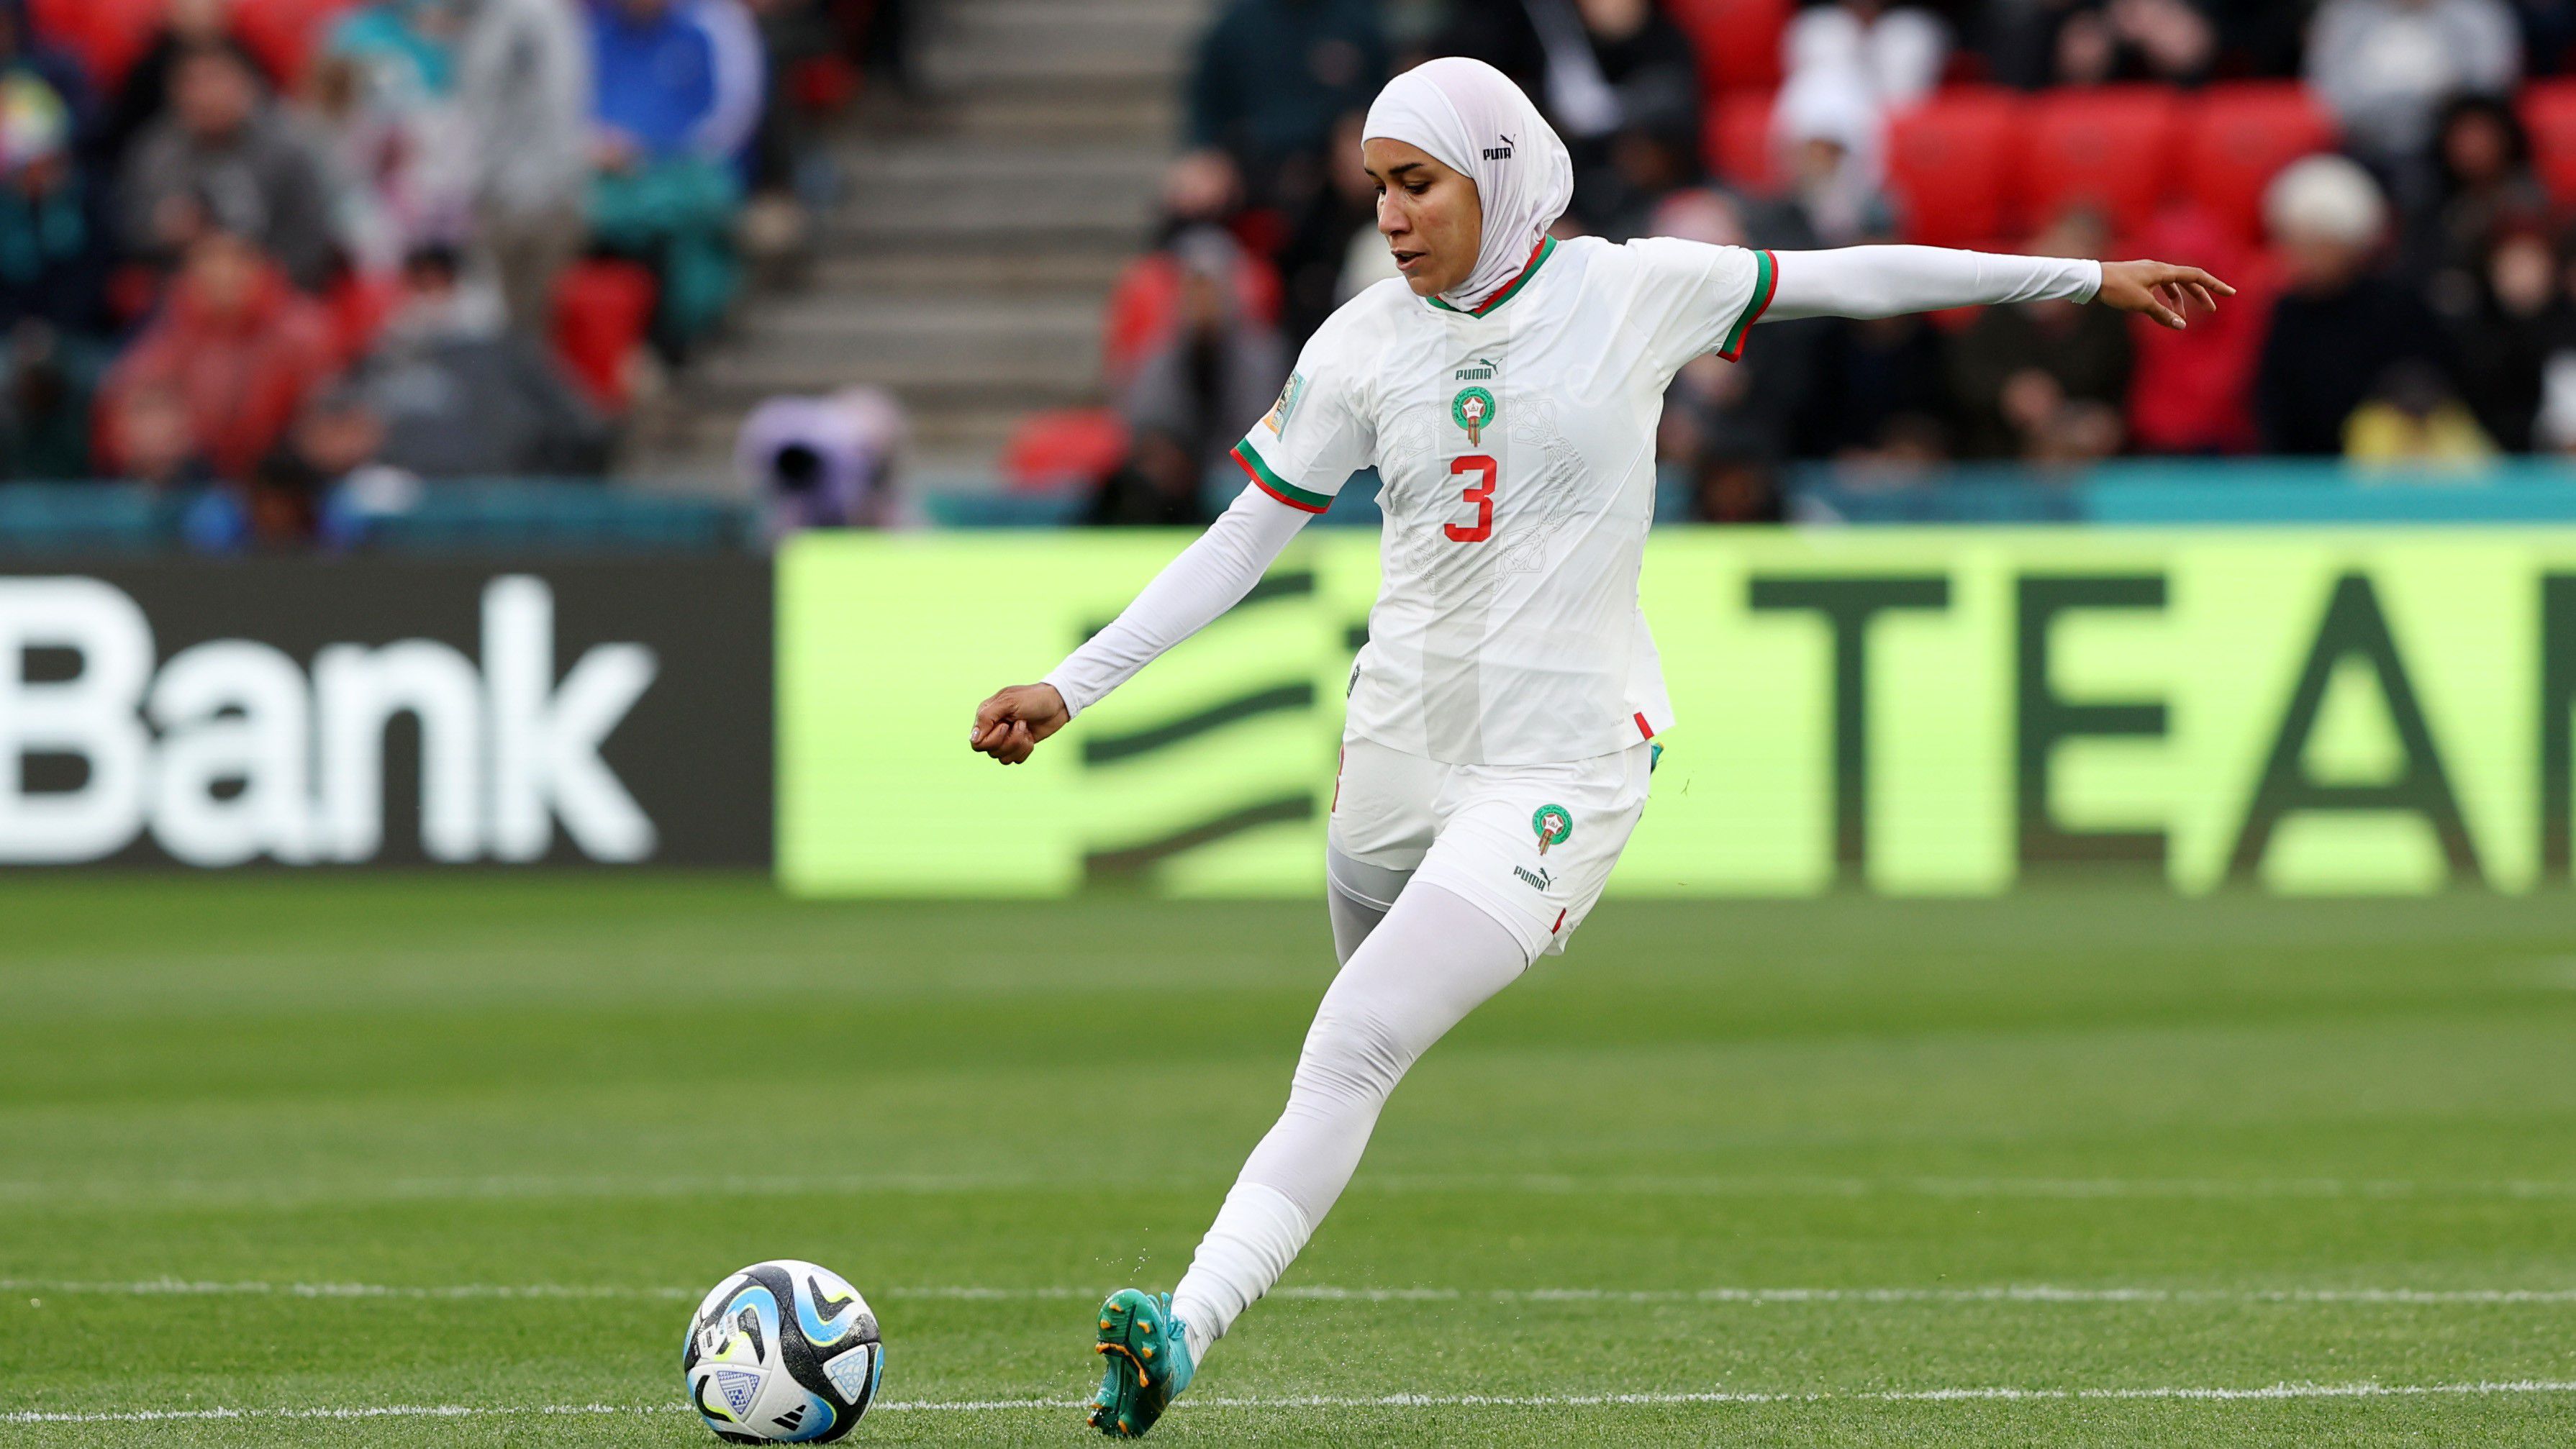 A FIFA 2014-ben engedélyezte a hidzsáb viselését, az afrikai csapat labdarúgója pedig az első játékos lett, aki felnőtt tornán a jellegzetes fejkendőben lépett pályára